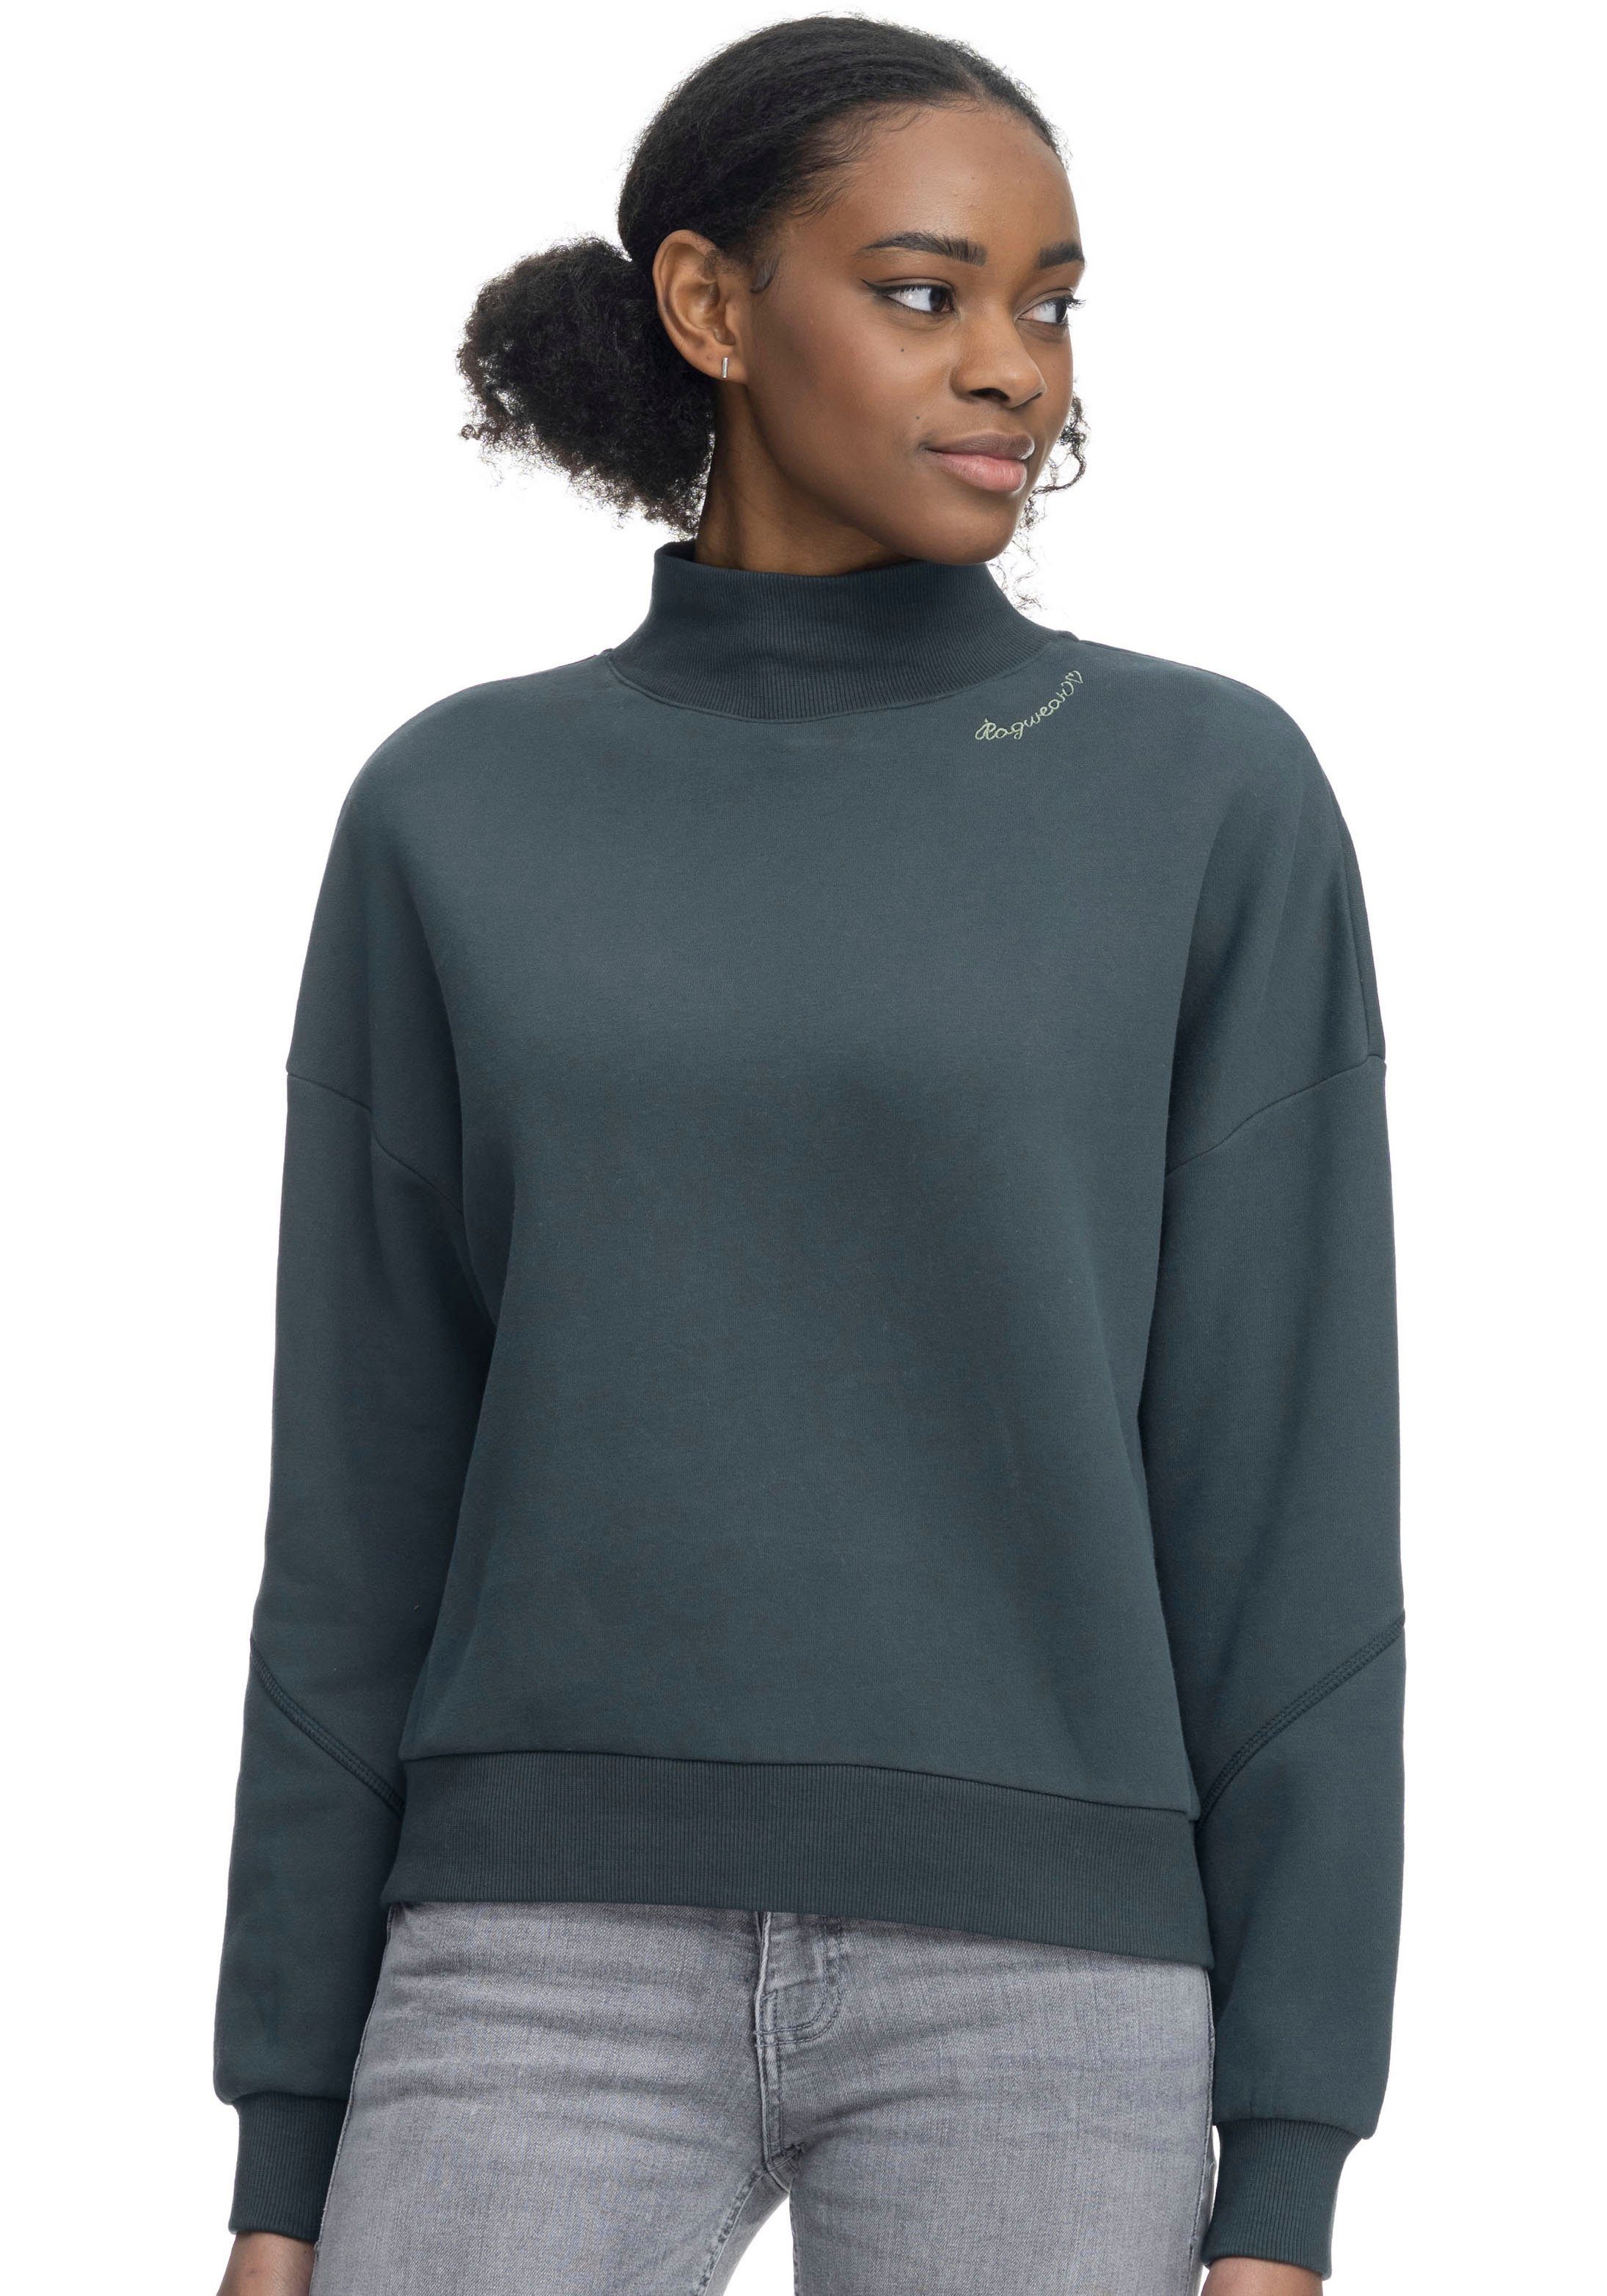 green KAILA Sweater Ragwear 5021 dark SWEAT